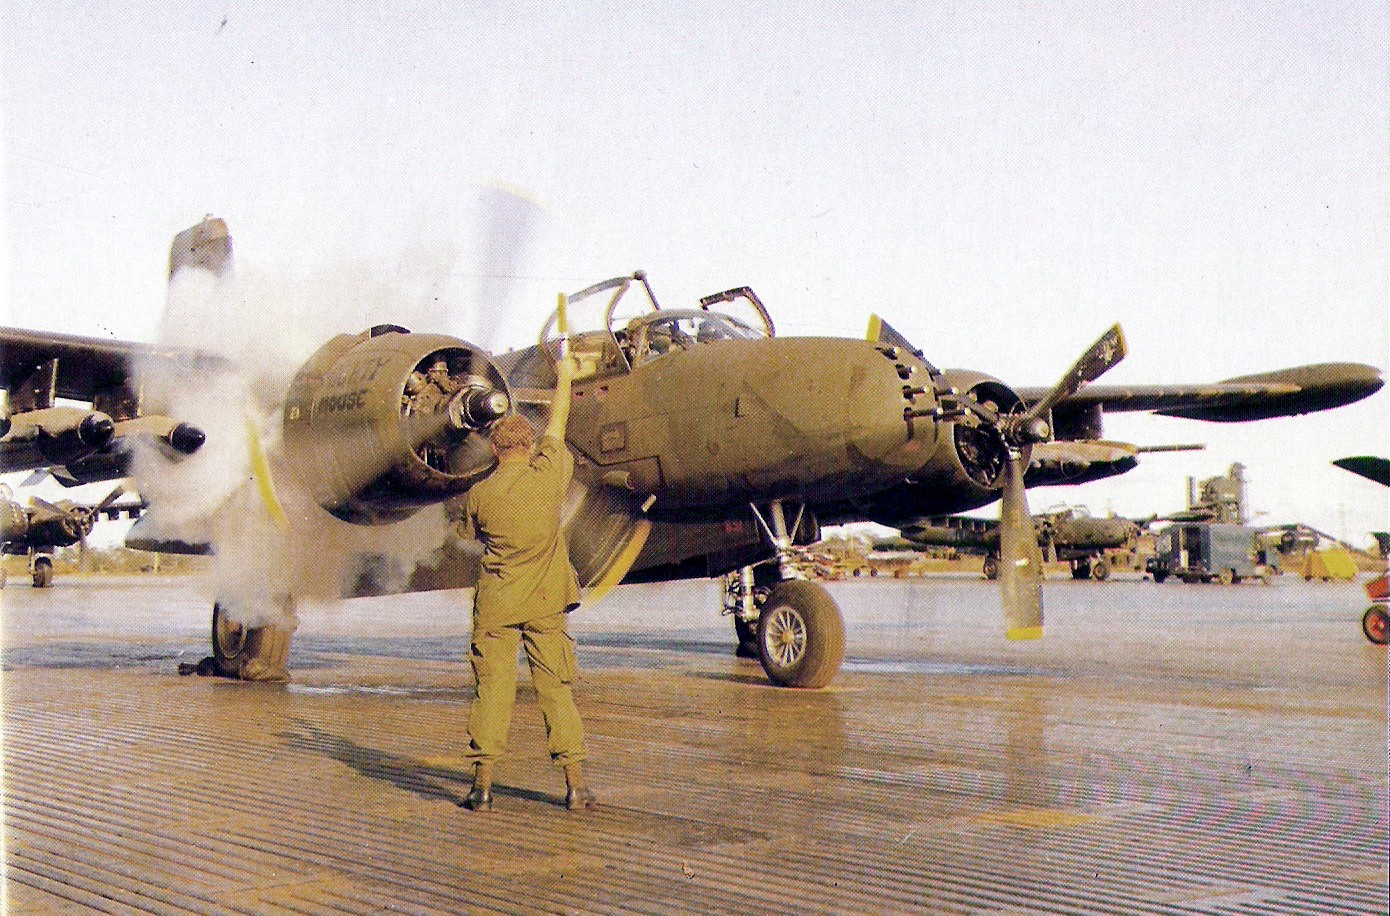 B-26 engine start